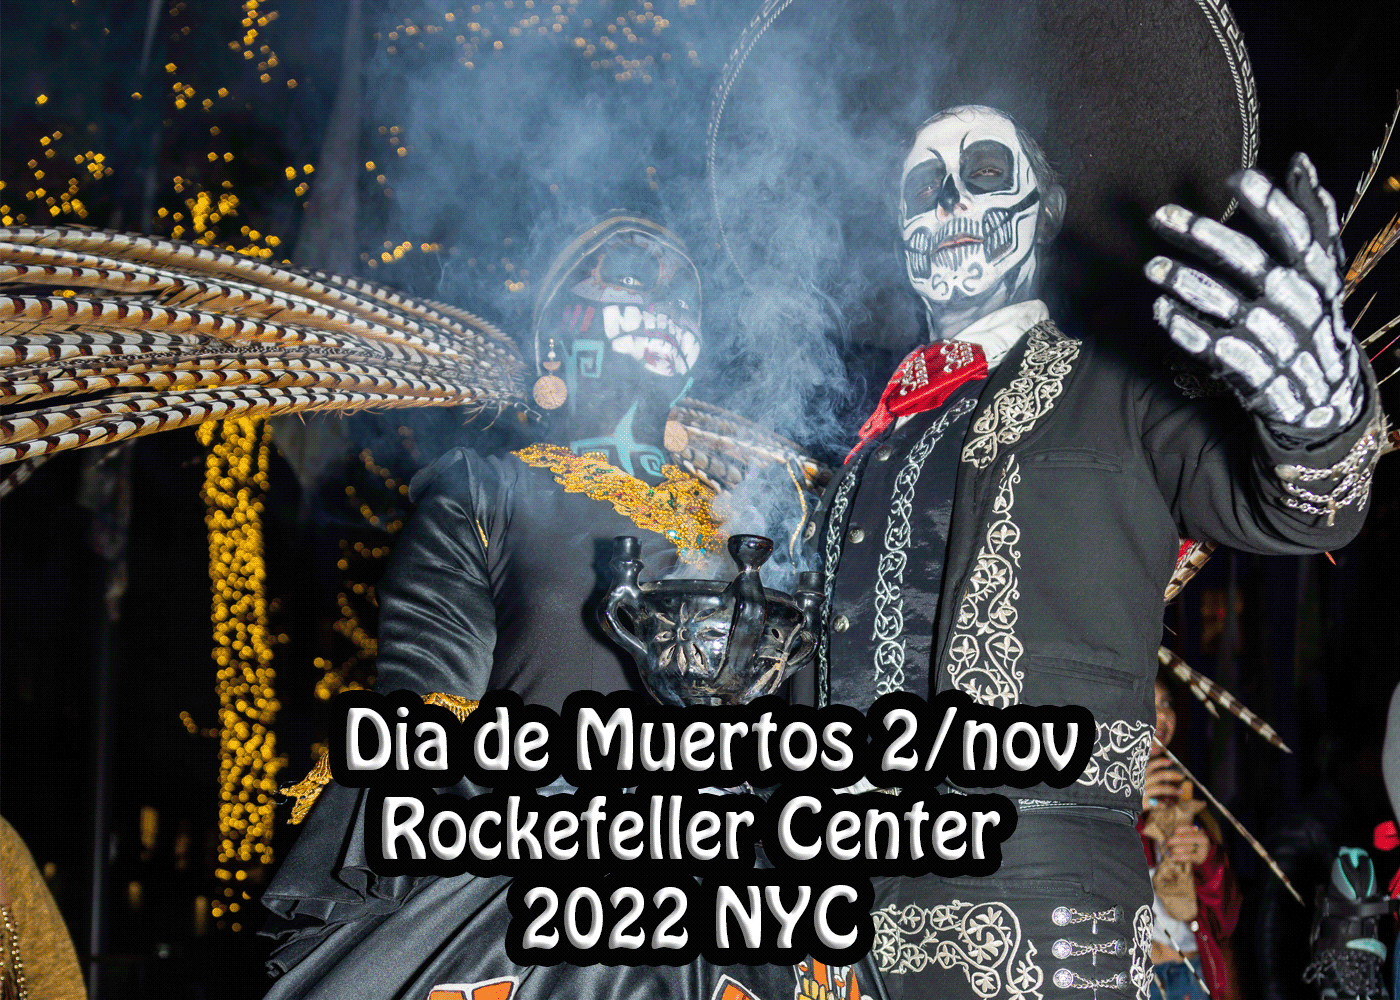 Dia De Muertos nov/2 2022
tradicion mexicana, celebrado en rockefeller center Nyc.

 Day of the Dead